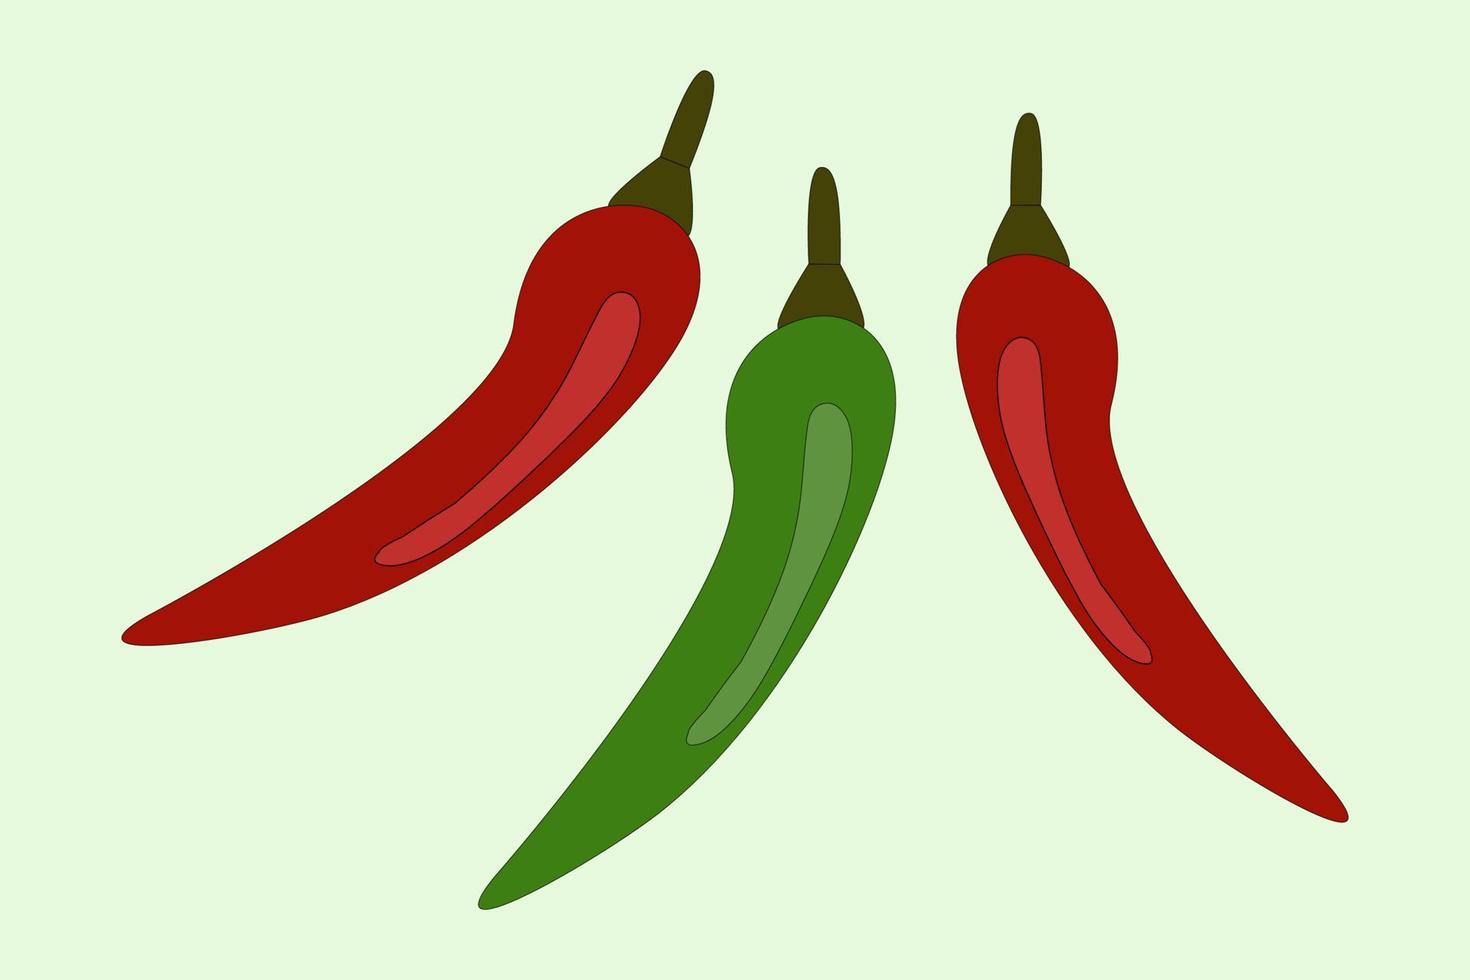 rama de caliente chile pimienta rojo y verde color, aislado vector imagen, iconos, cosecha, verduras, plántulas, planta semillas sano comida vegetariano